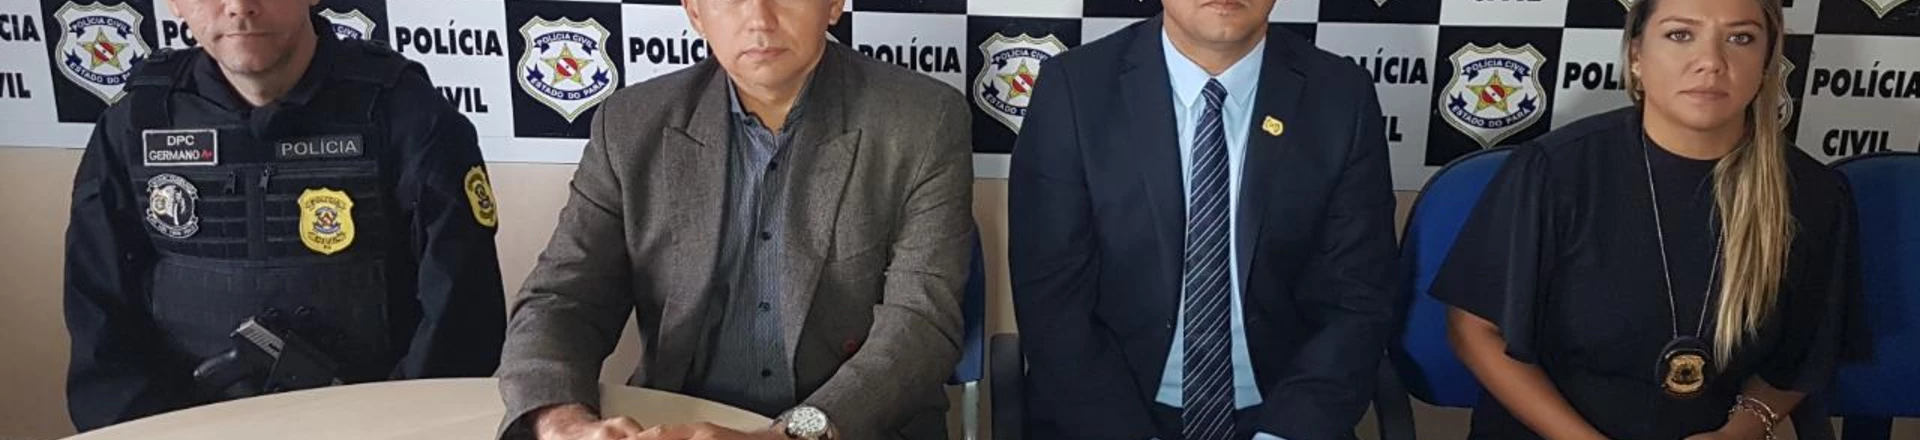 O delegado José Humberto de Melo (terceiro da esquerda para a direita) foi afastado do caso. Ele comandou a operação que prendeu ambientalistas e os colocou como suspeitos de provocar incêndios florestais. 